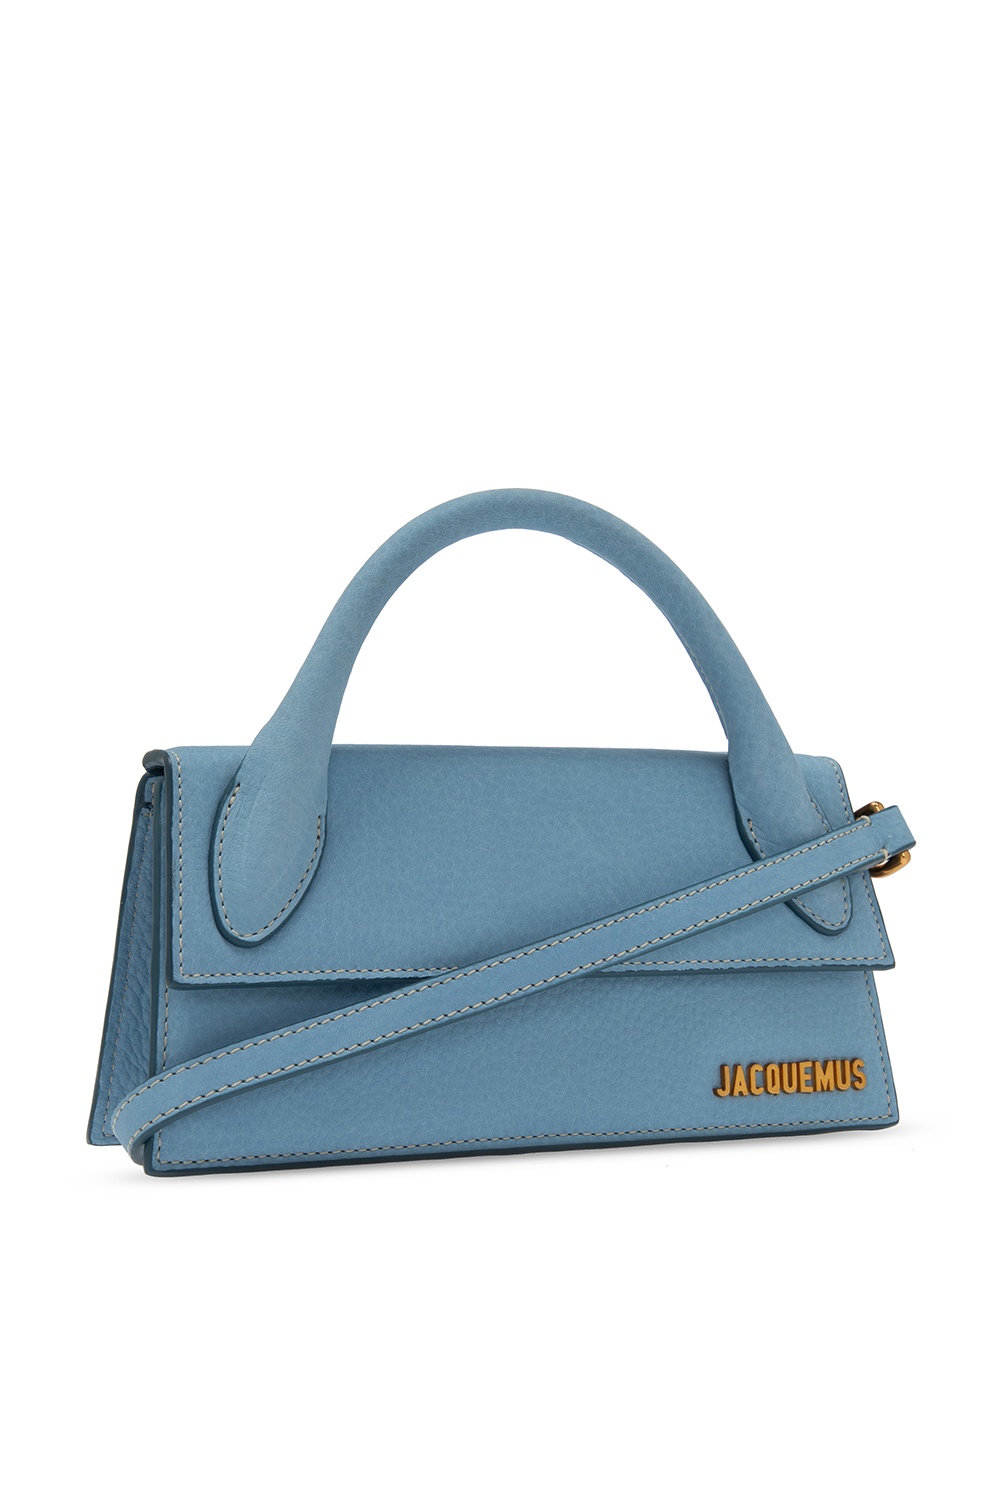 Blue 'Le Chiquito Long' shoulder bag Jacquemus - Vitkac HK